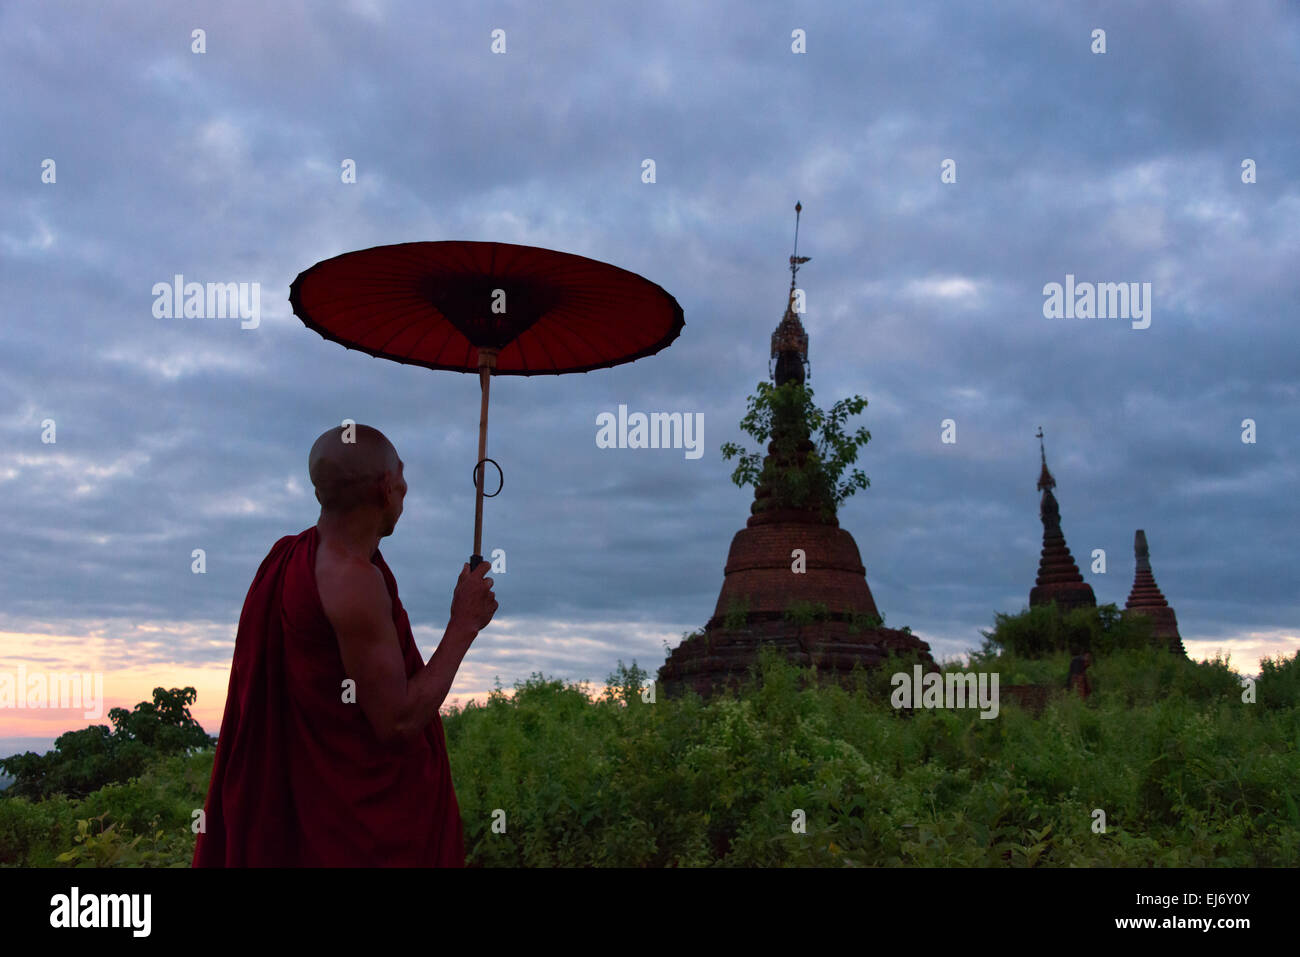 Mönch mit Regenschirm beobachten antiken Tempel und Pagoden im Dschungel bei Sonnenaufgang, Mrauk-U, Rakhine State in Myanmar Stockfoto